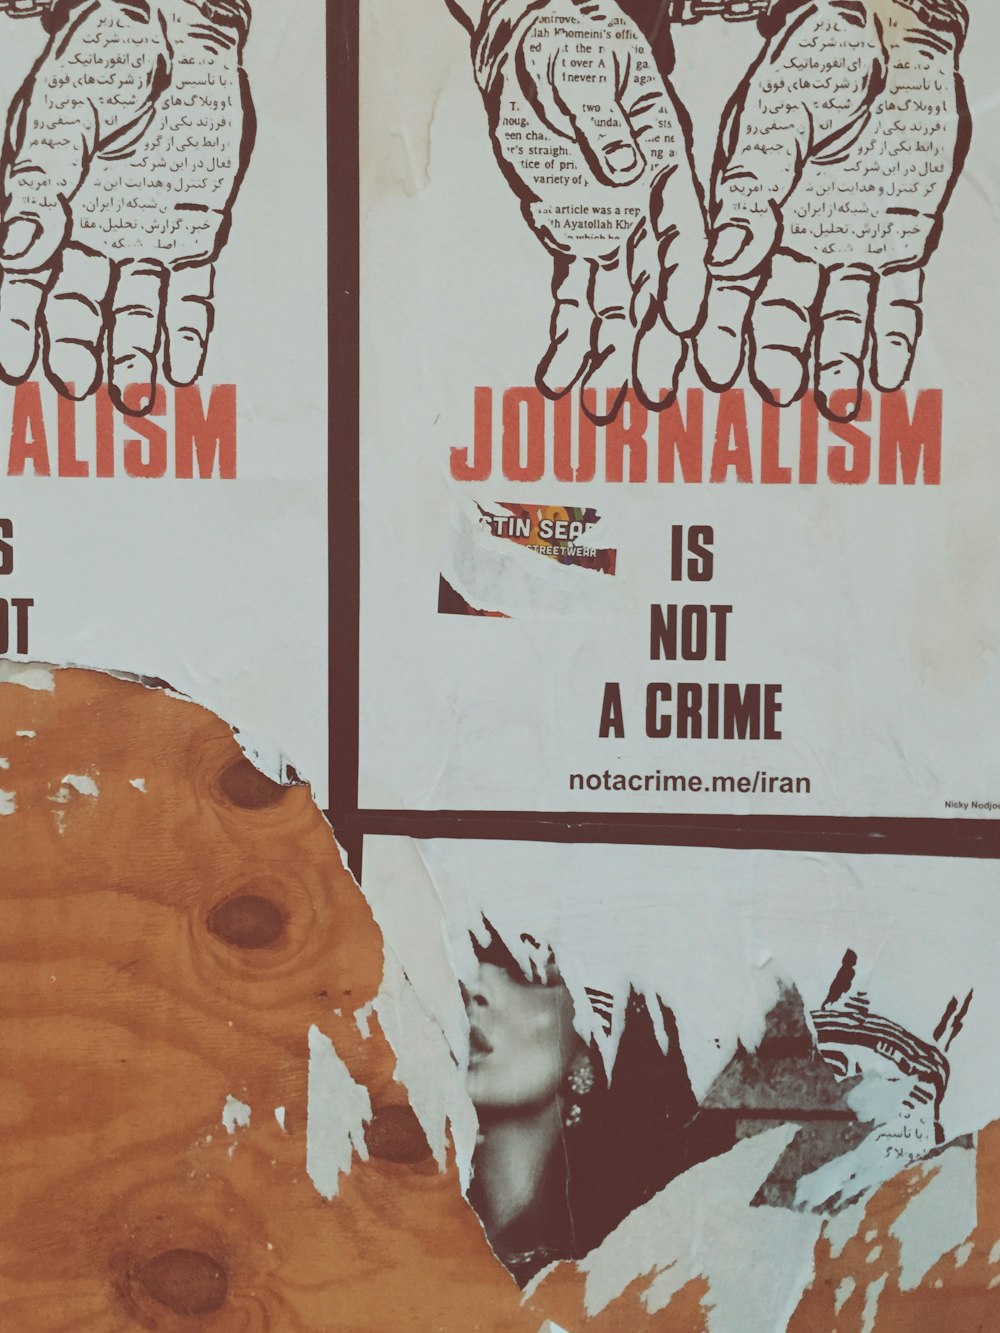 Journalism propaganda photo – Free Wall Image on Unsplash